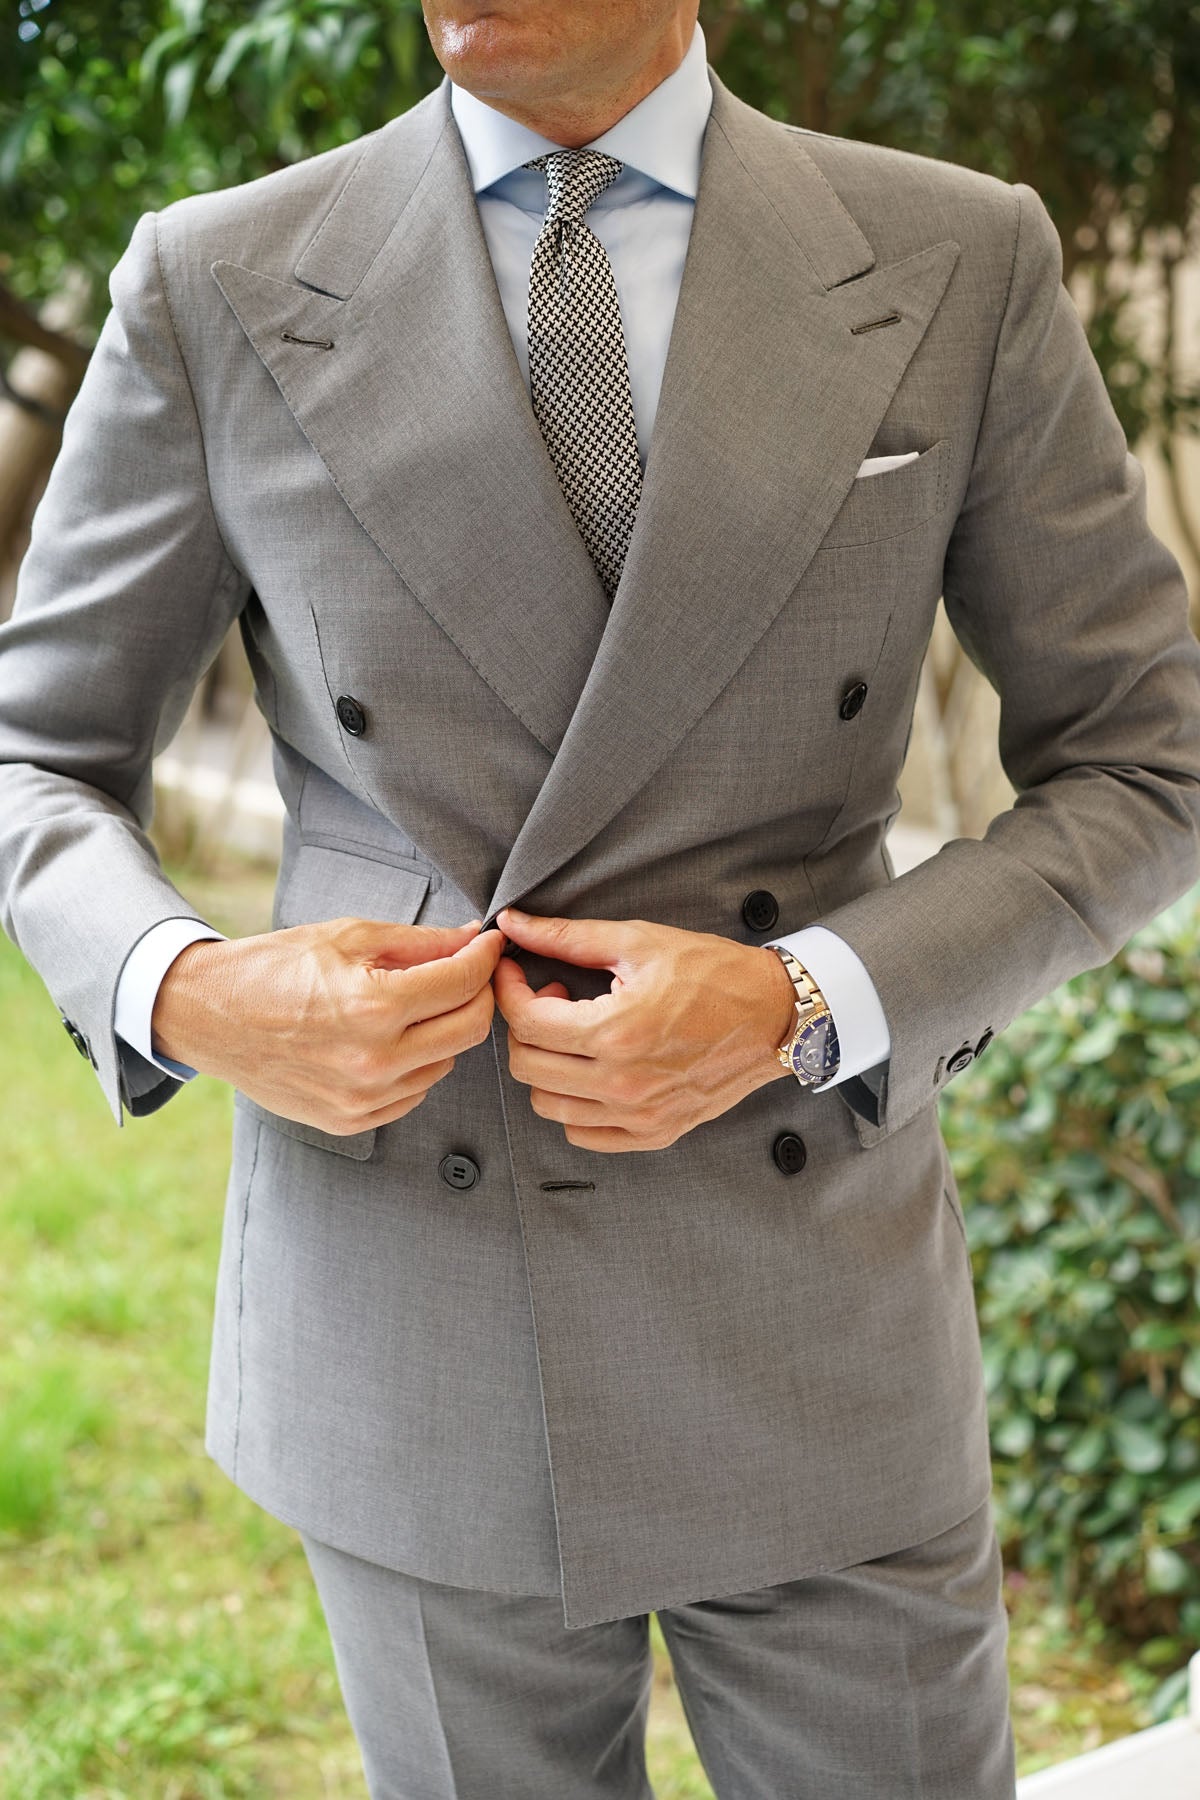 Black & Silver Houndstooth Pattern Skinny Tie | Cool Slim Ties for Men ...